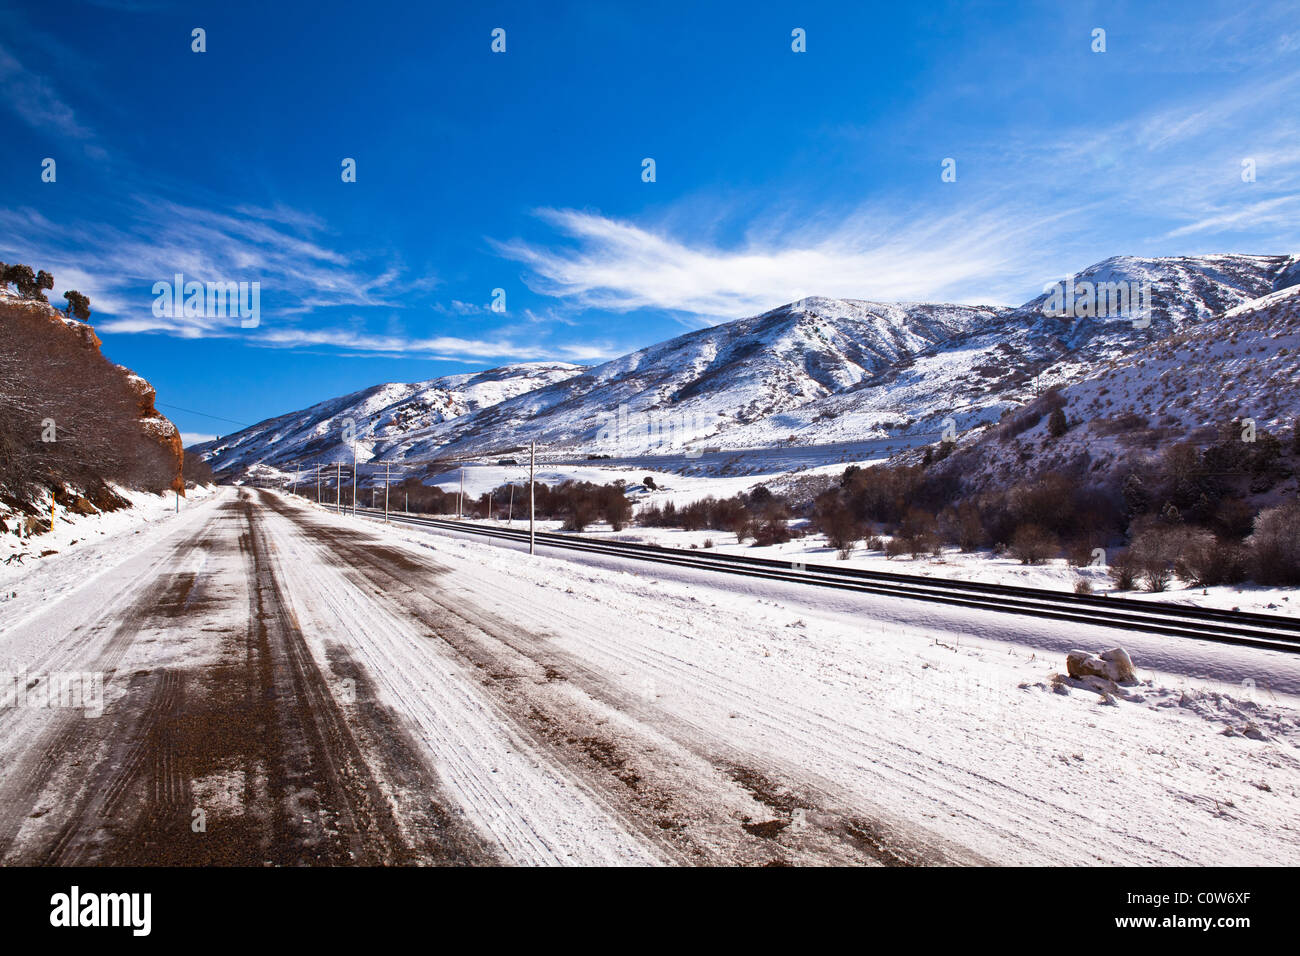 A beautiful winter scene taken from railroad tracks in the red rocks near Echo, Utah Stock Photo